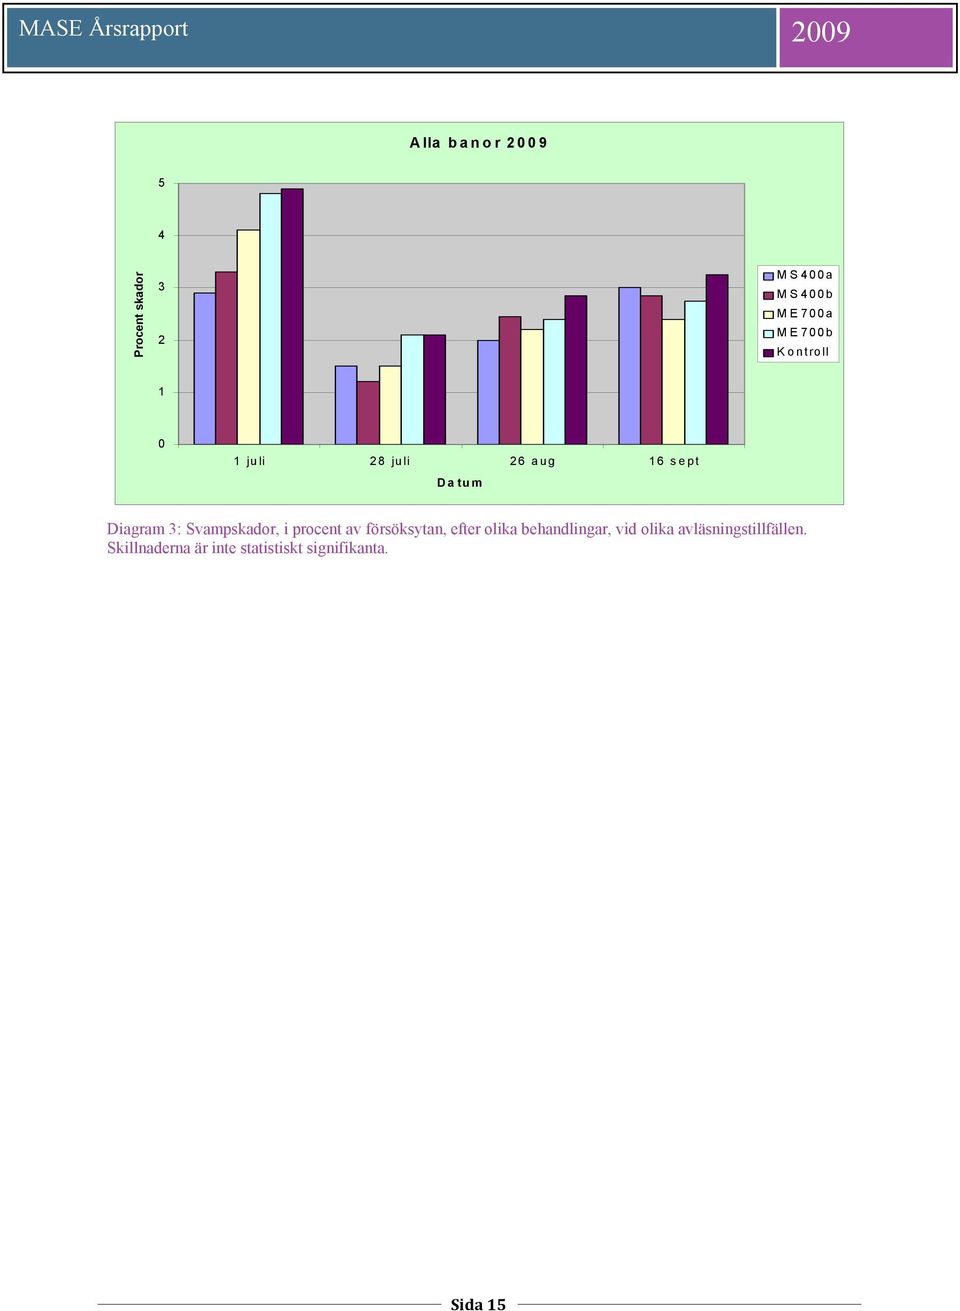 Diagram 3: Svampskador, i procent av försöksytan, efter olika behandlingar, vid